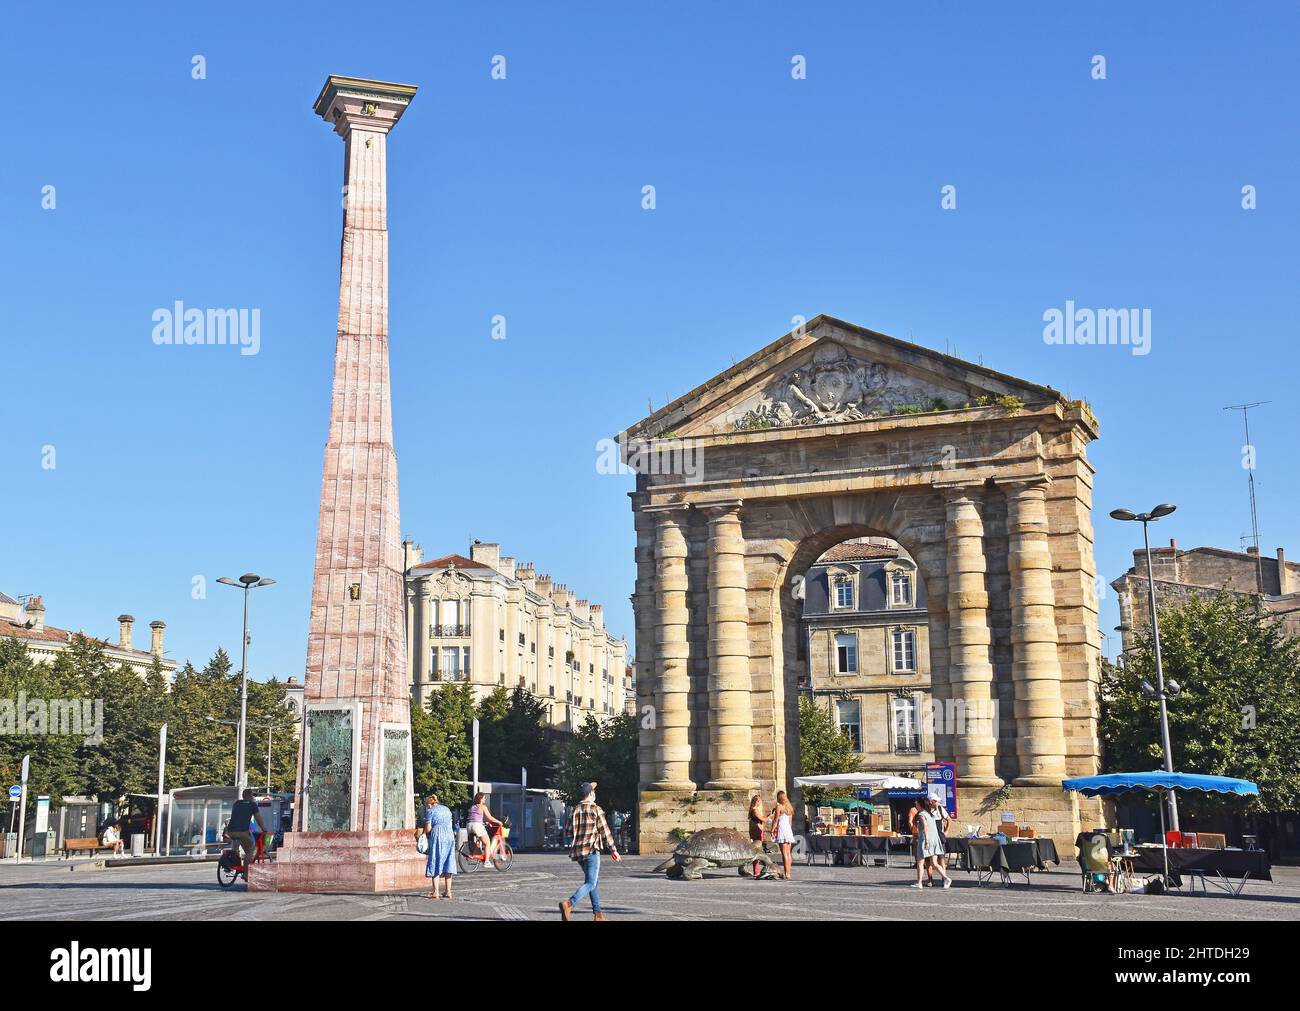 Place de la Victoire in Bordeaux, France, the Porte d’Aquitaine, triumphal arch built 1753, twisted obelisk sculpture, paying homage to vines & wines Stock Photo